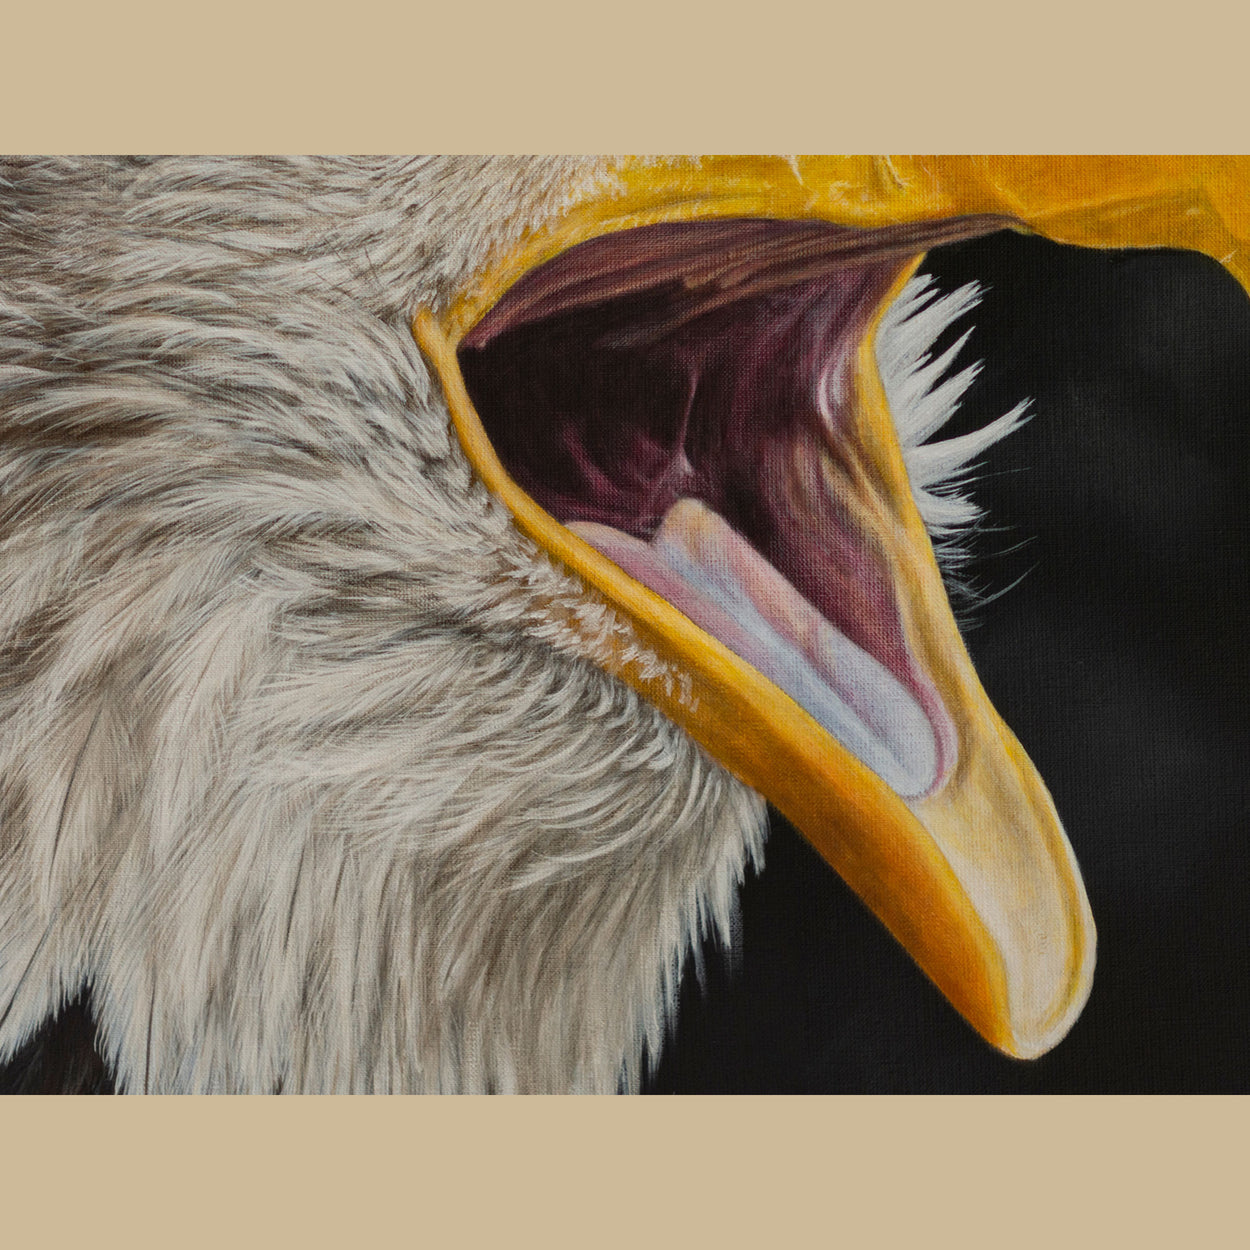 Bald Eagle Painting Close-up 3 - Jill Dimond Bird Artist